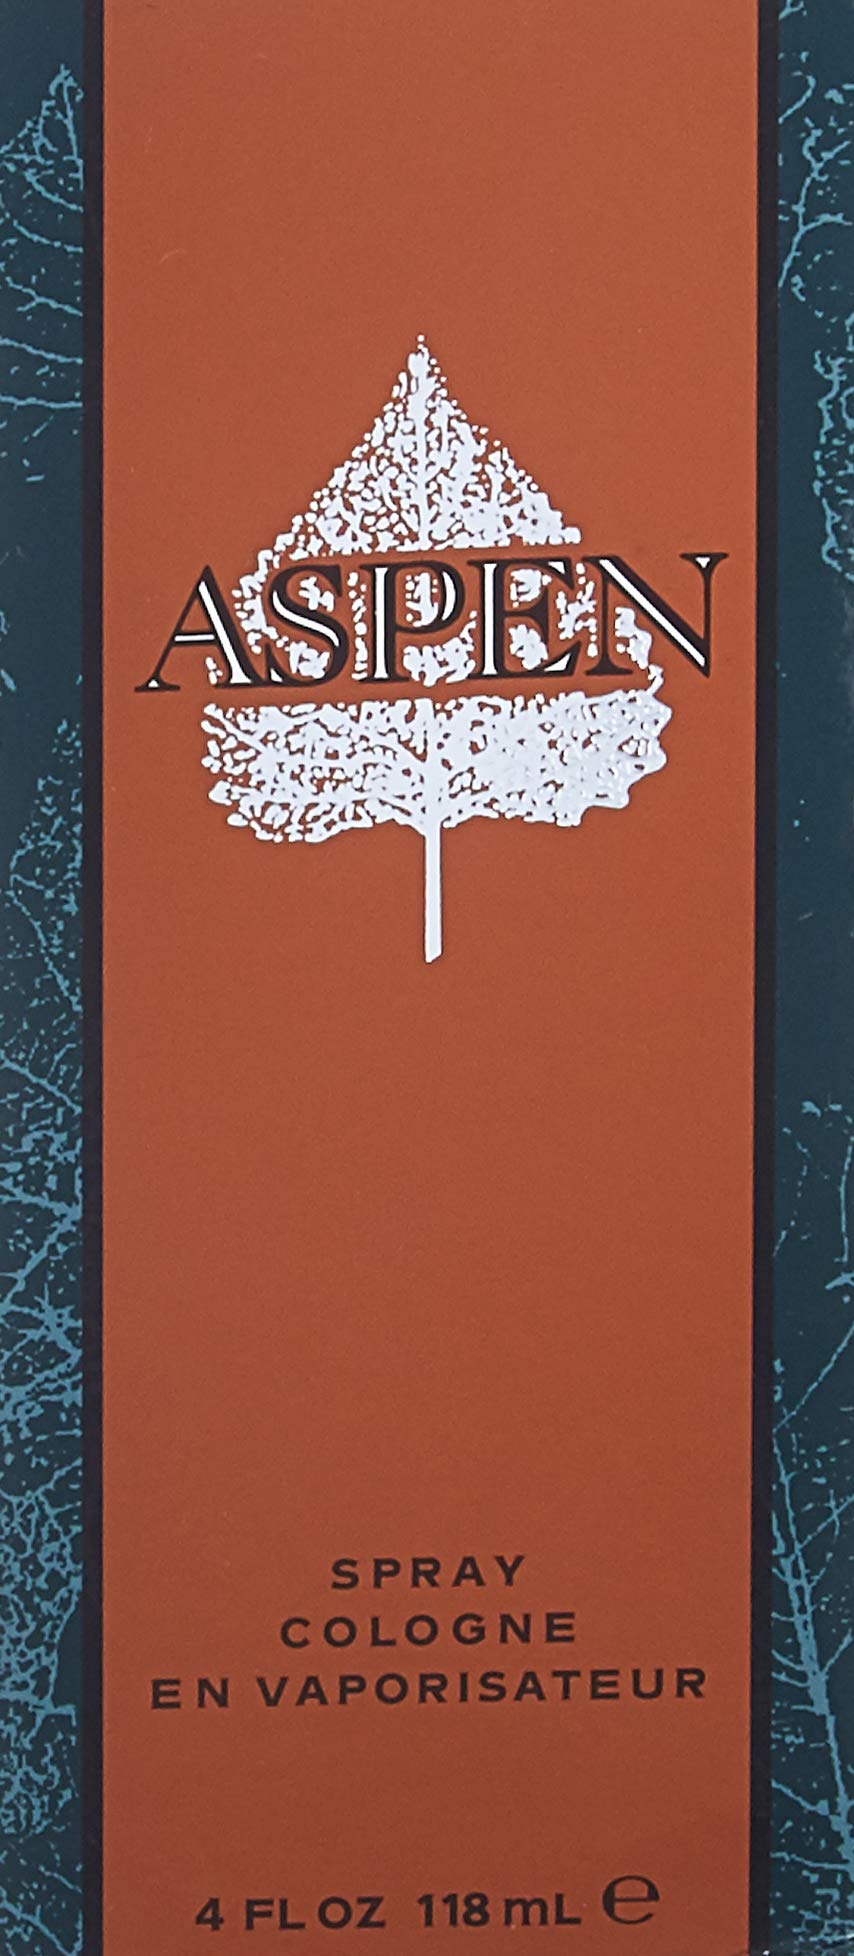 Aspen by Coty 4.0 oz 118 ml for Men Eau De Cologne